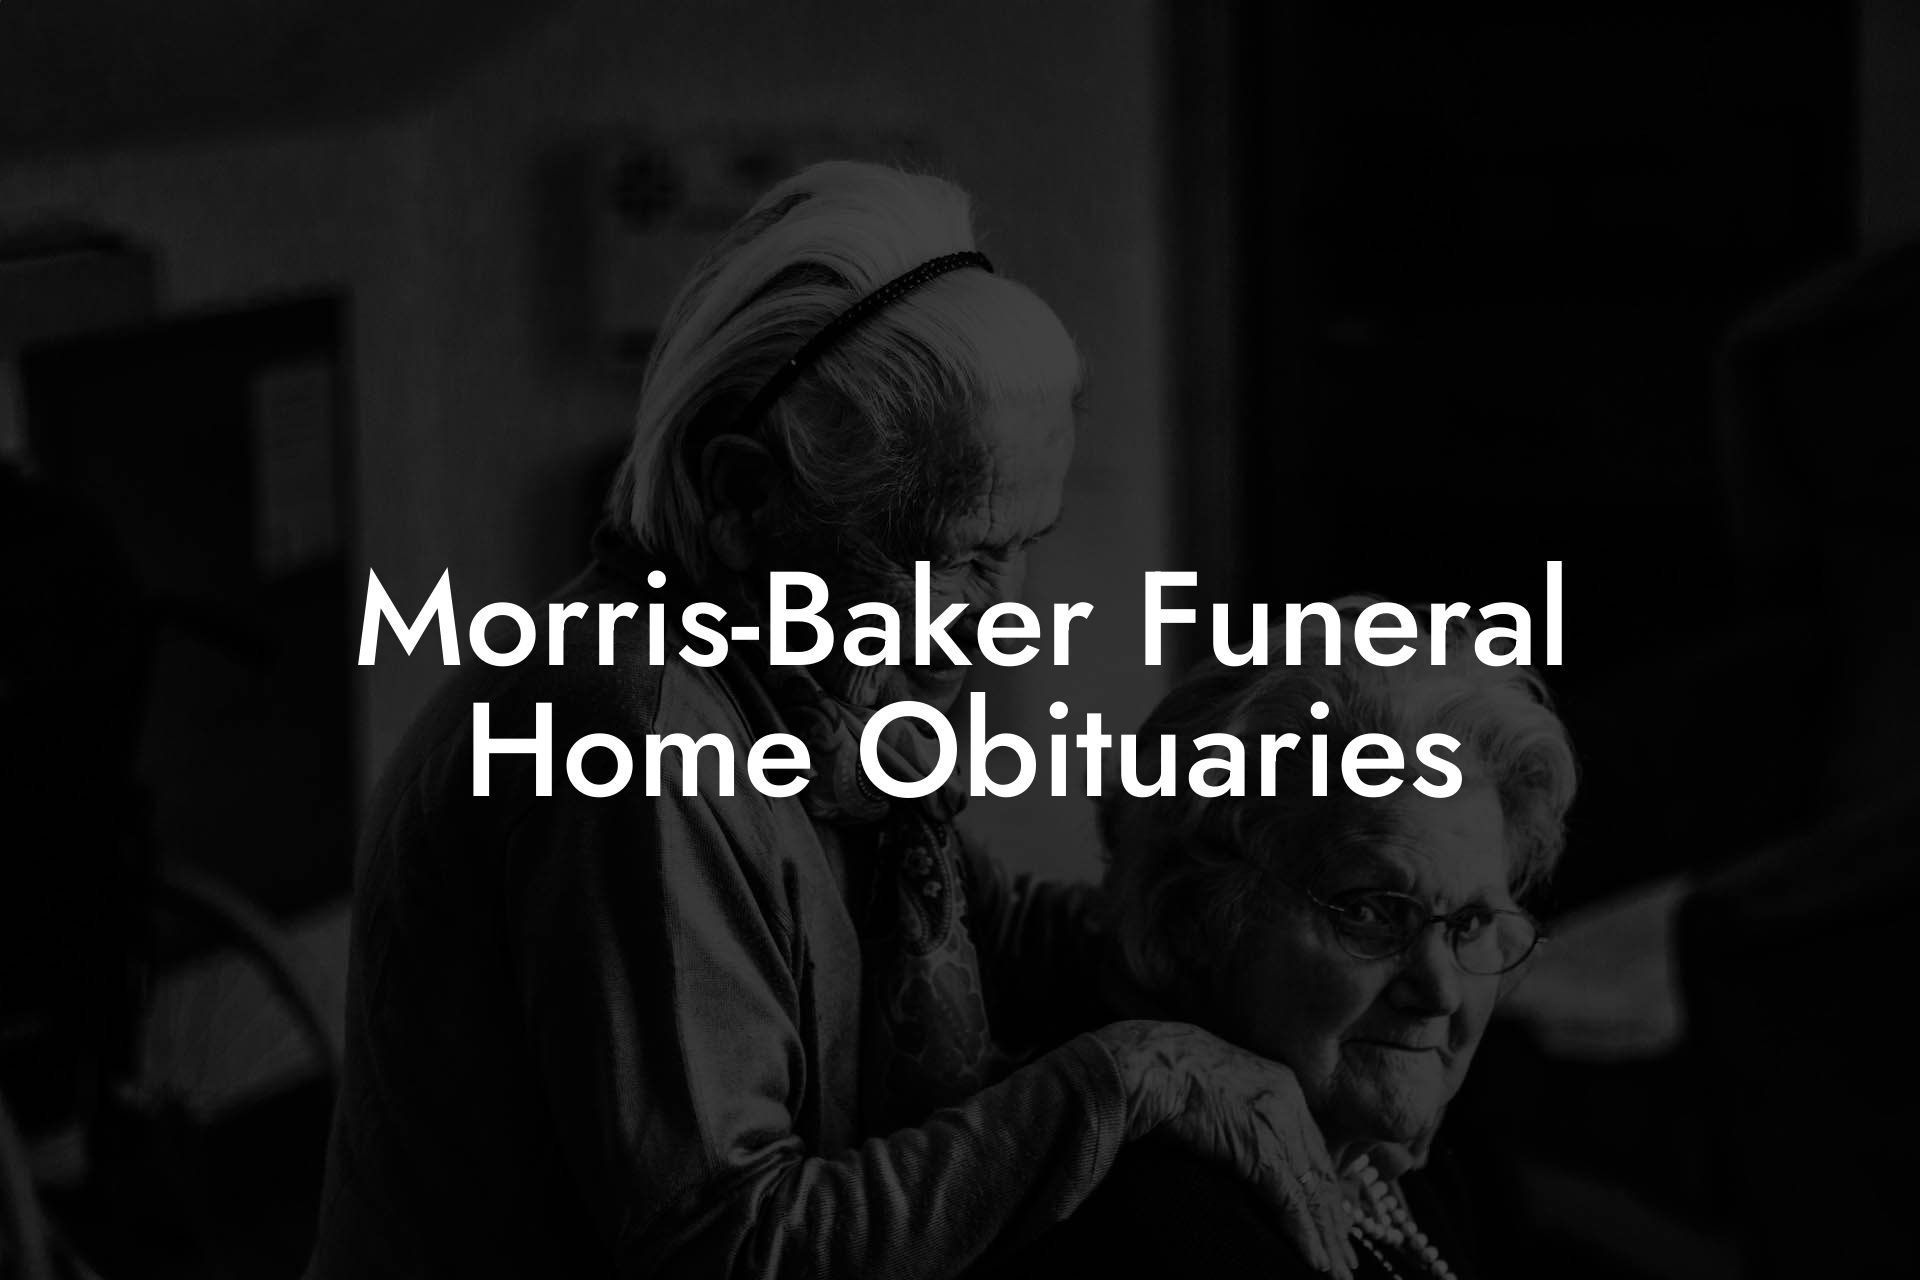 Morris-Baker Funeral Home Obituaries